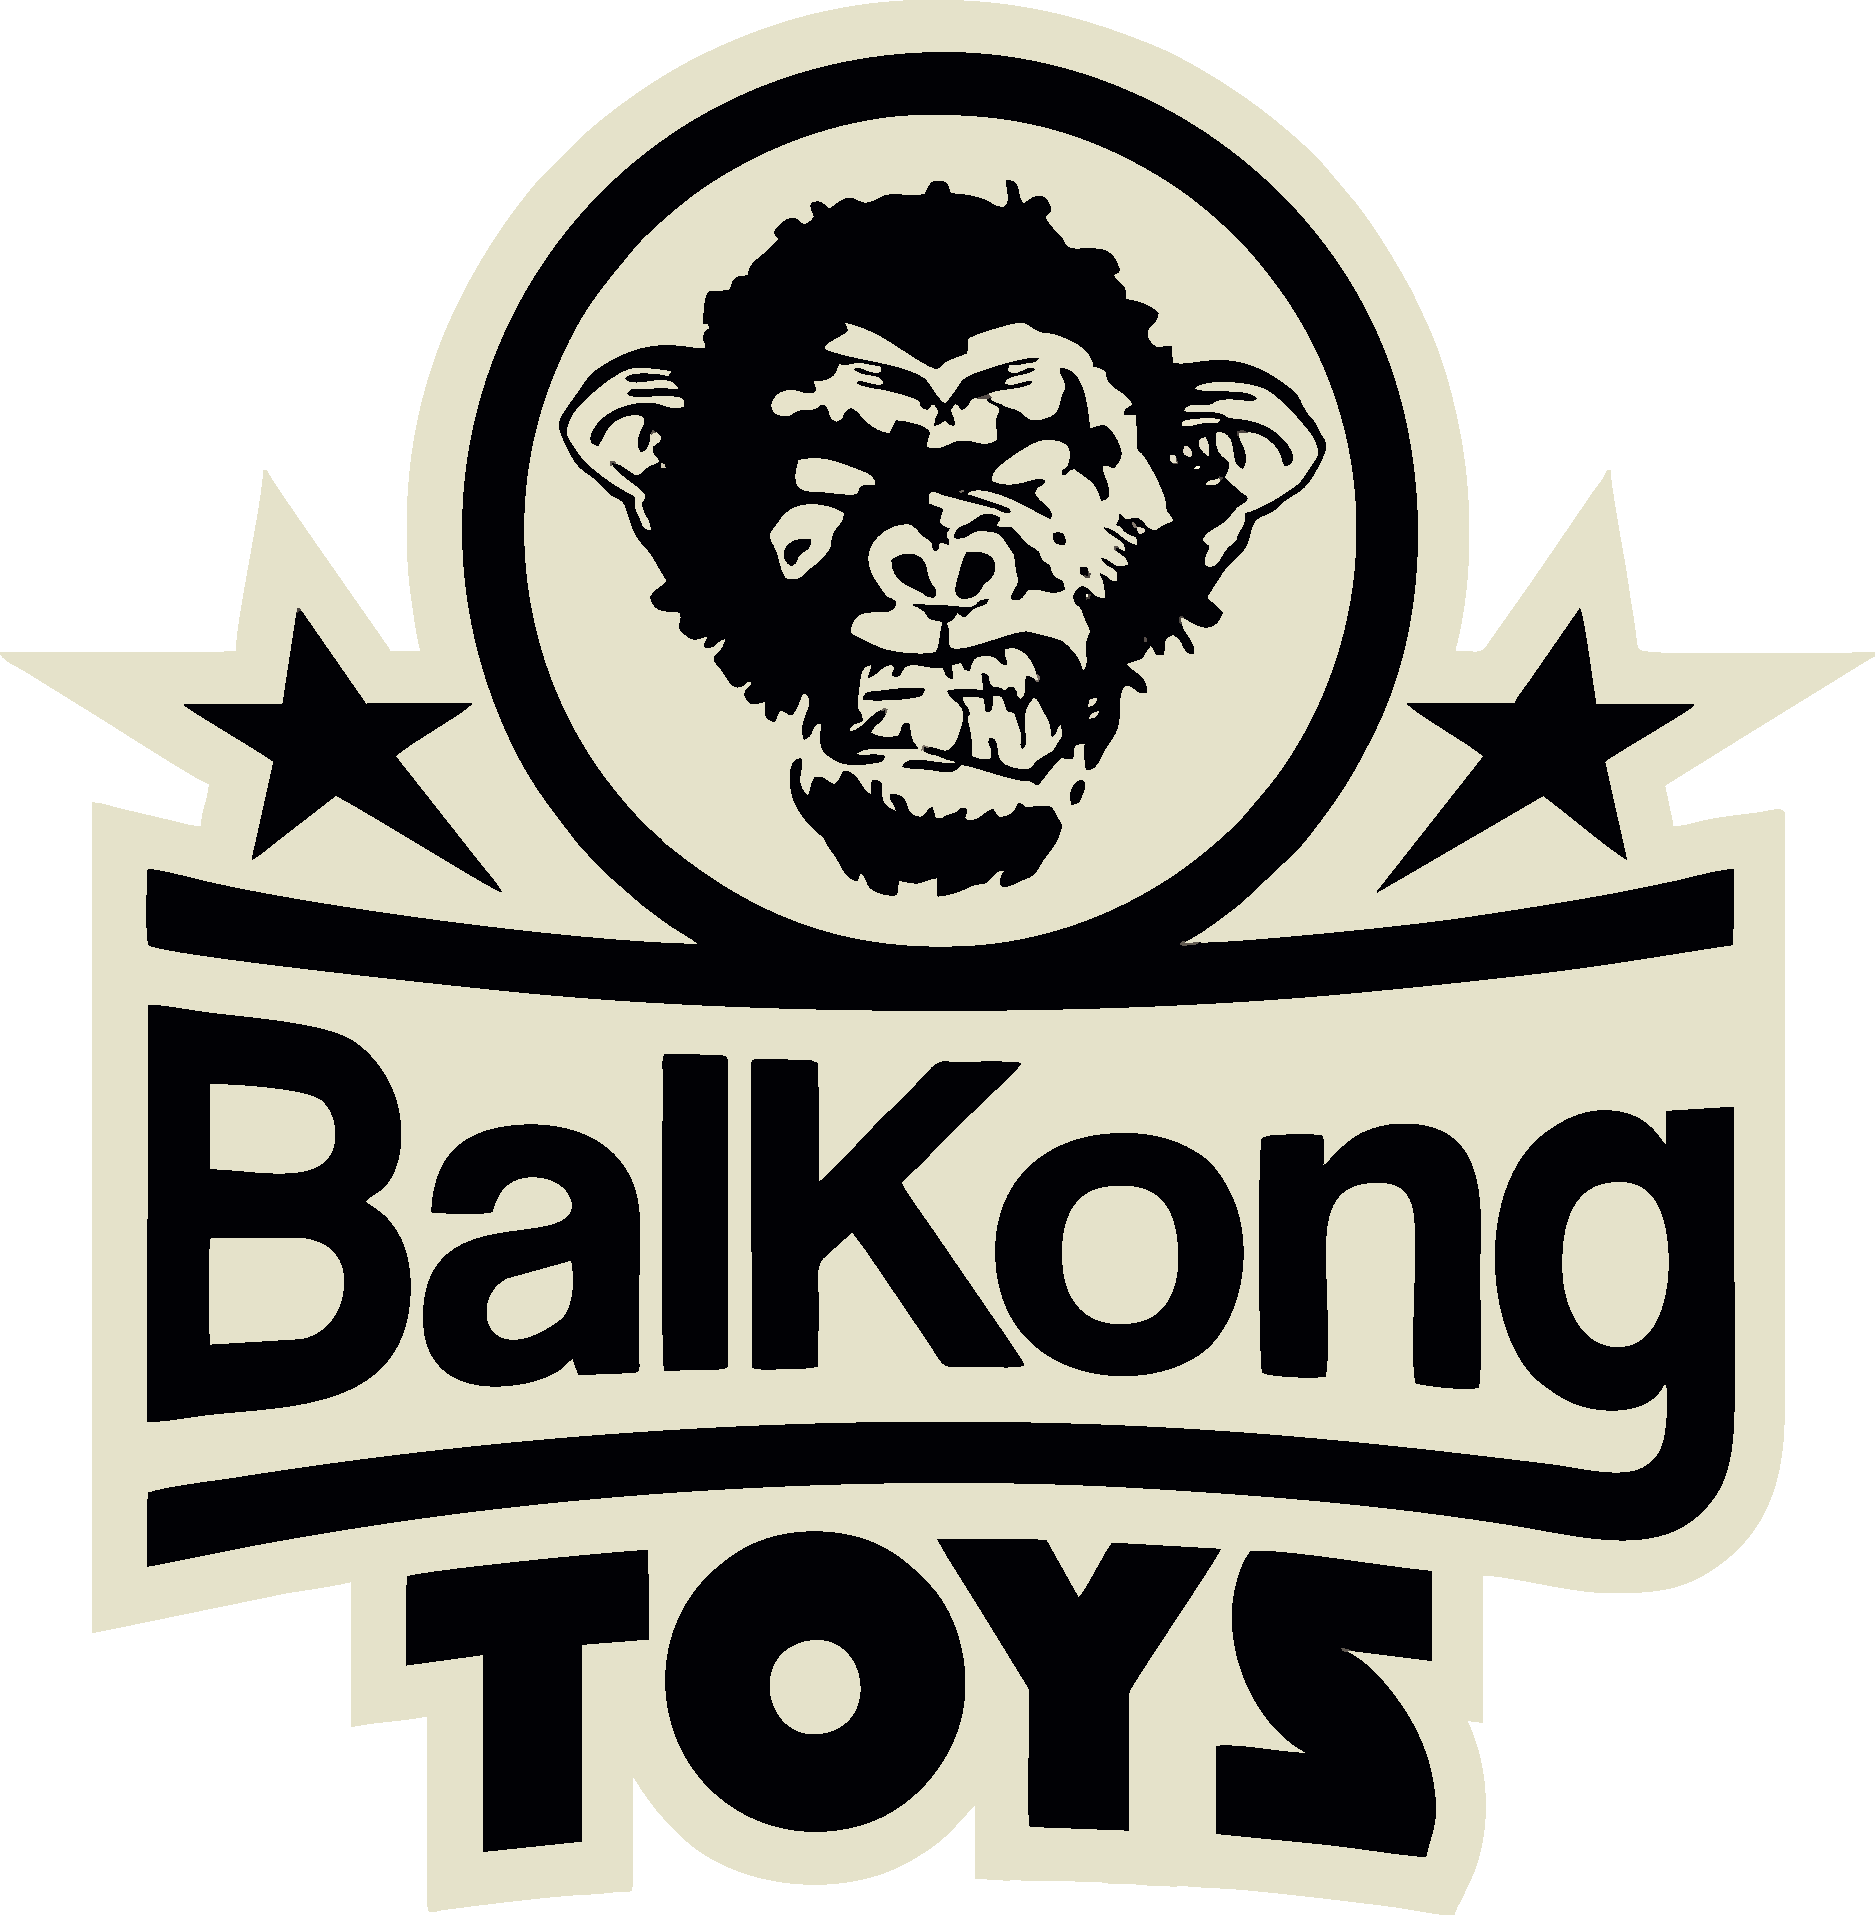 Balkong Toys Logo Vector